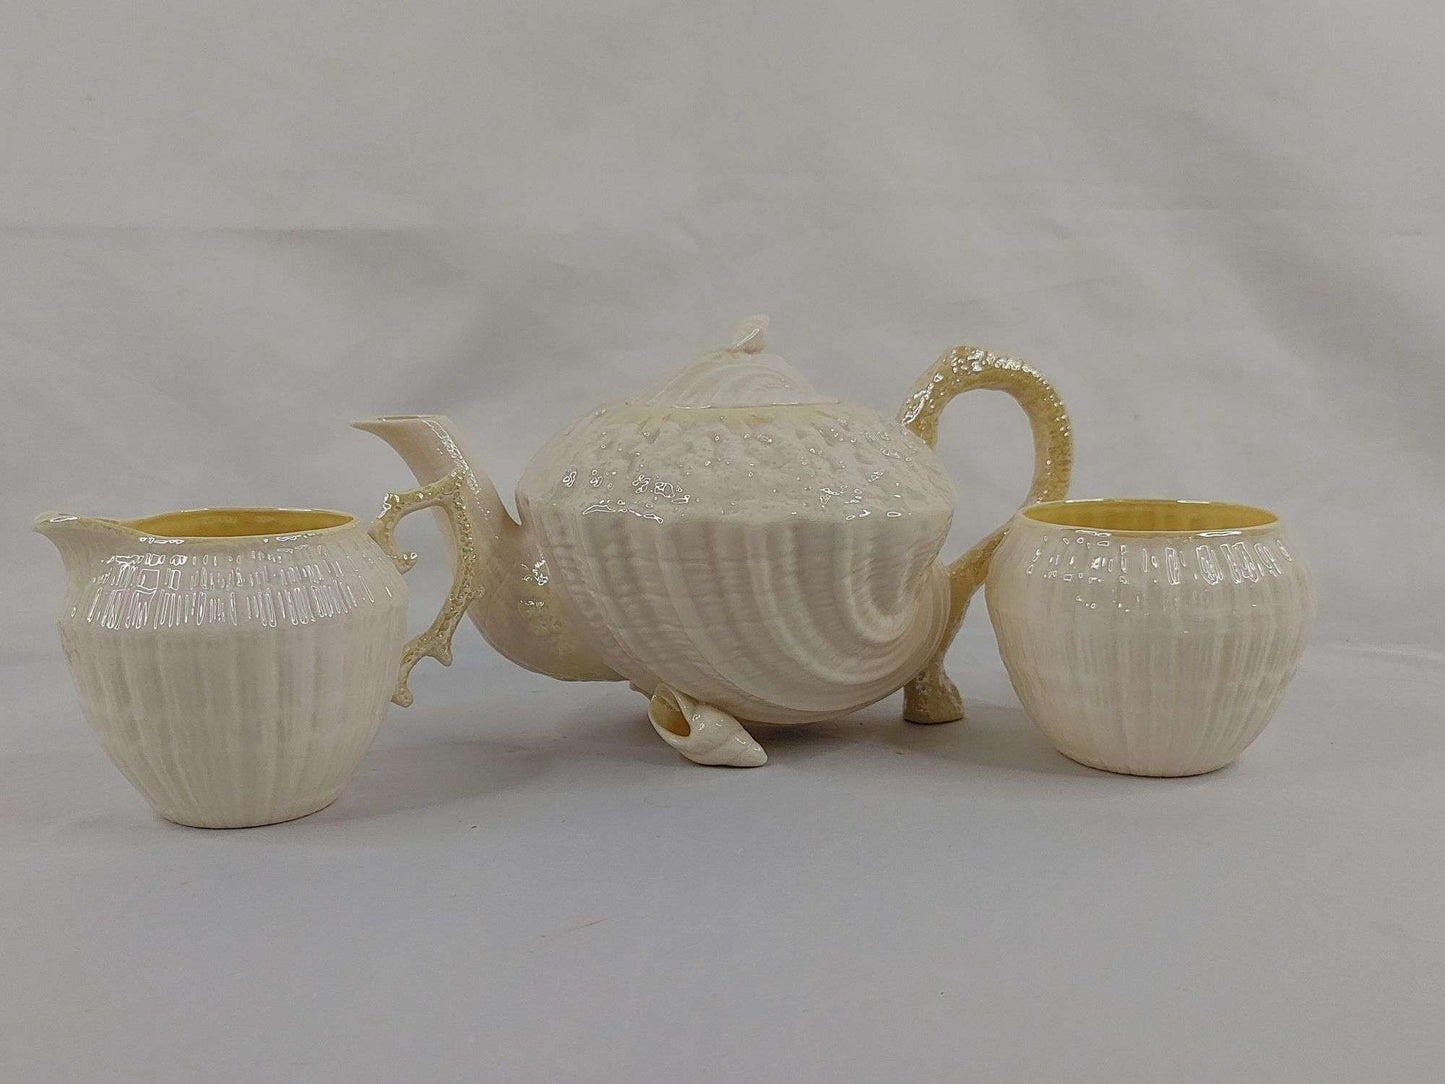 Belleek Porcelain Tea Set